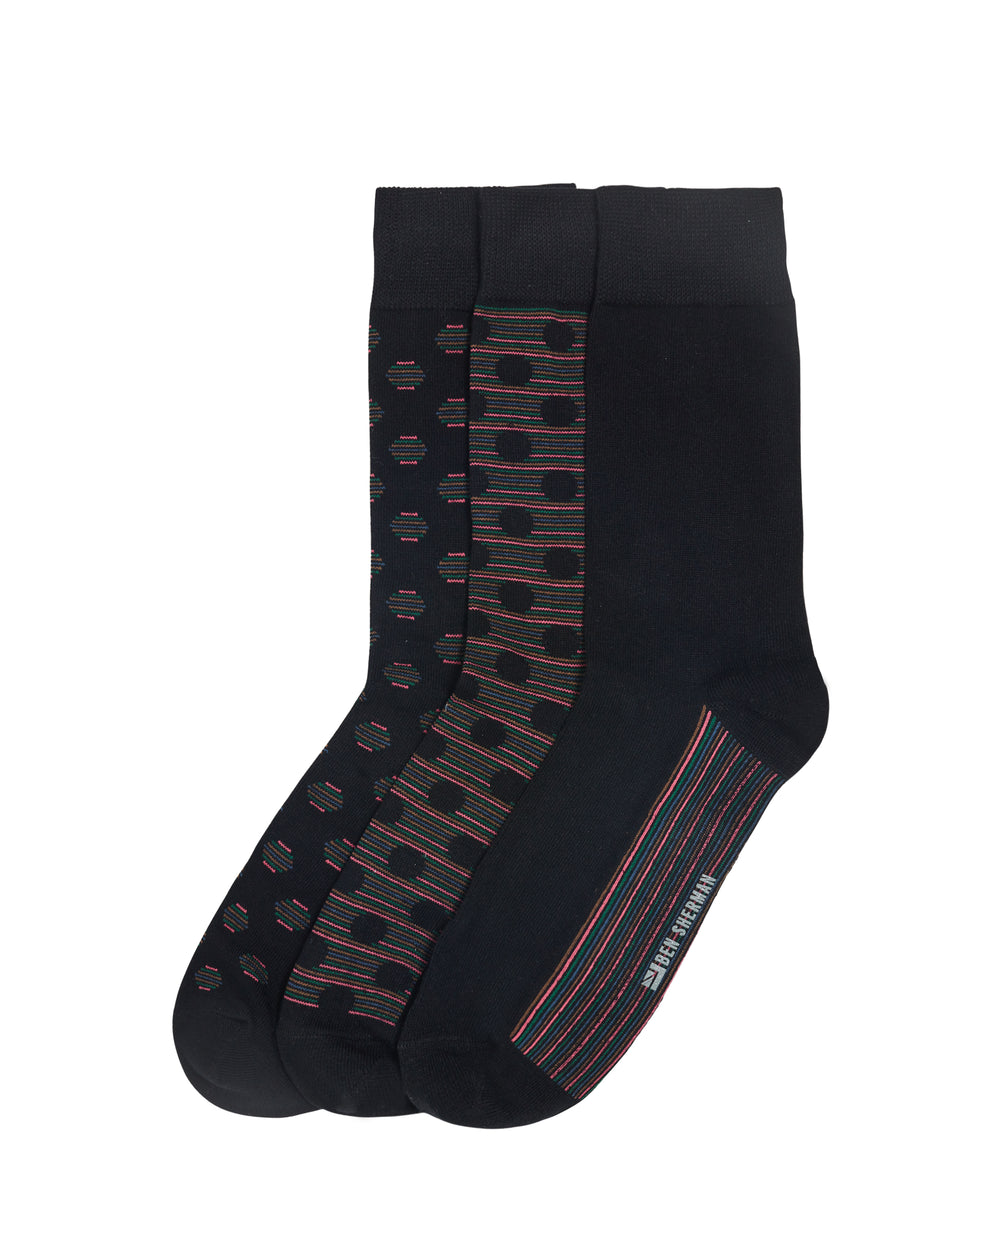 Empery Men's 3-Pack Socks - Black Multi